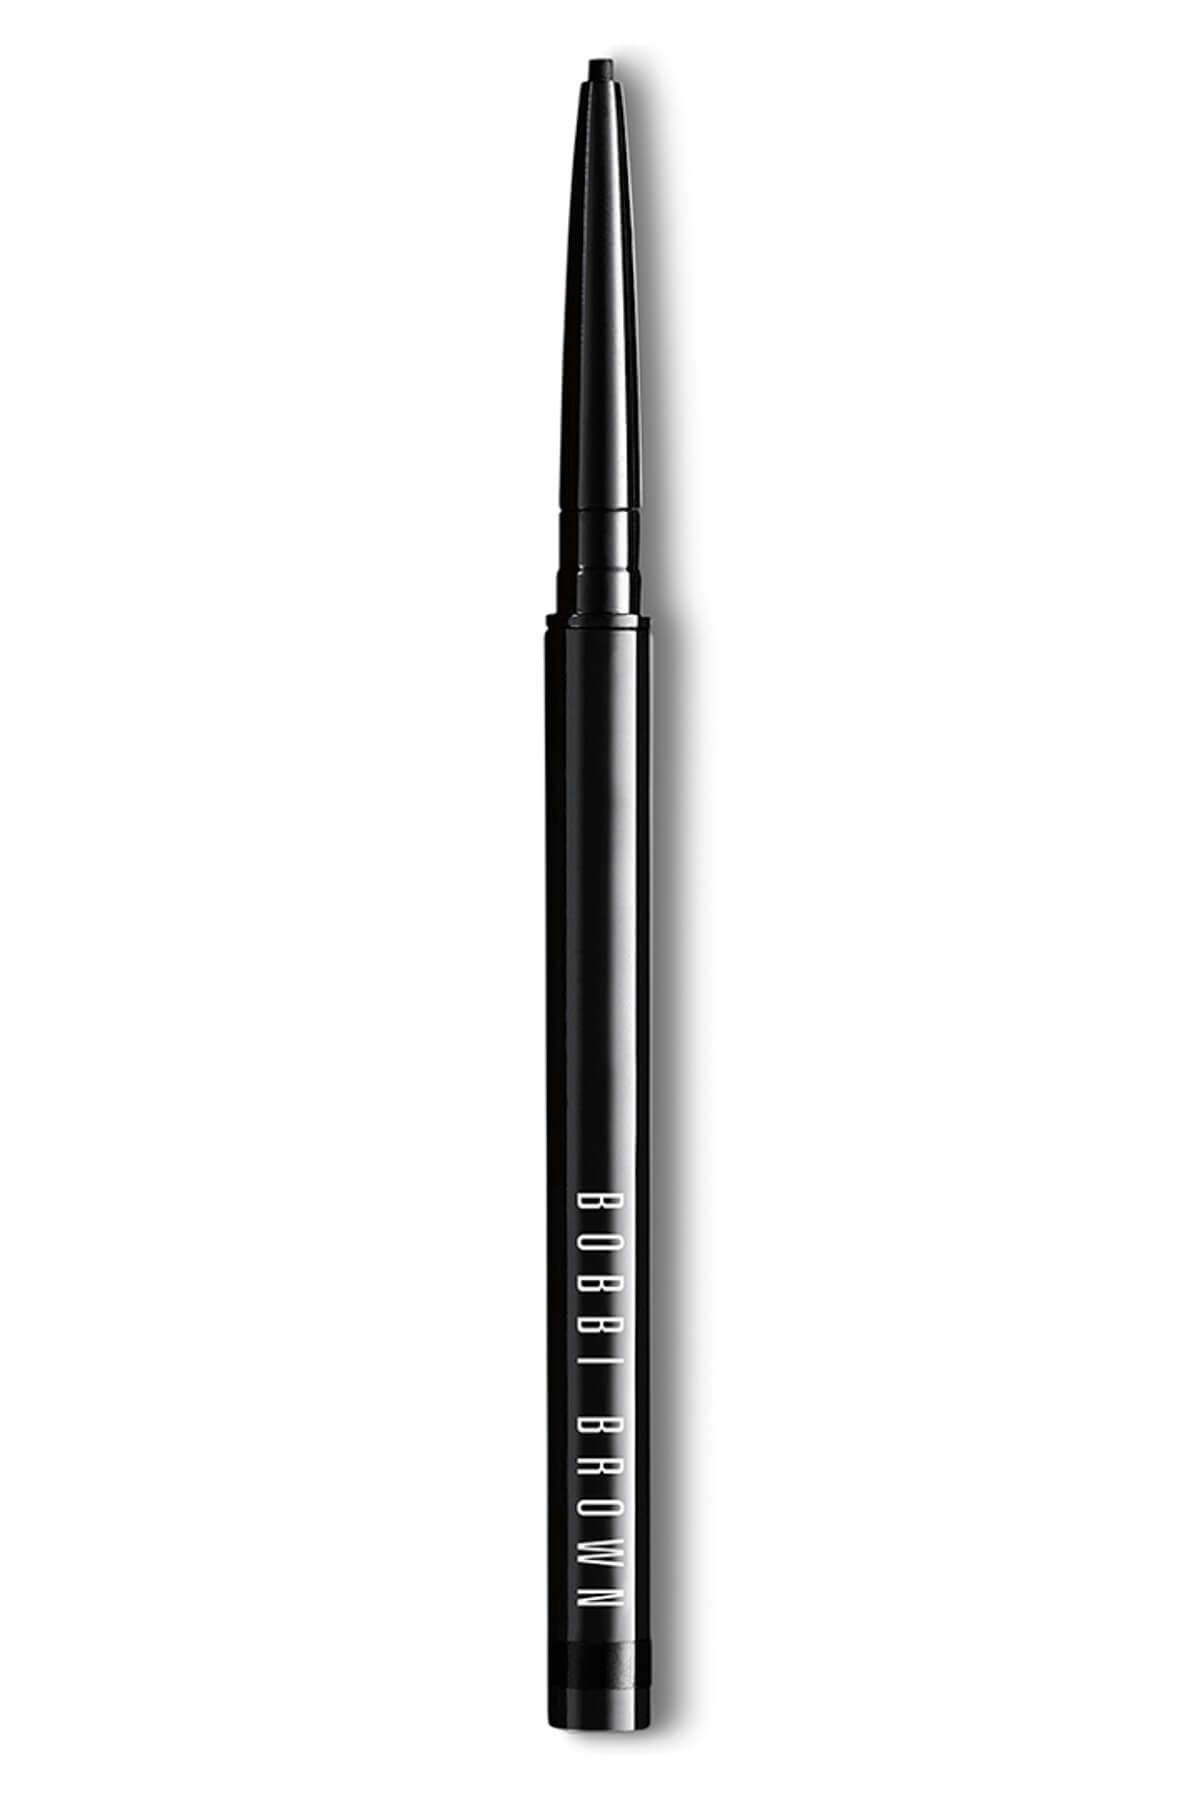 Bobbi Brown Eyeliner - Long Wear Waterproof Liner Black Smoke 0.02 oz. 716170179445